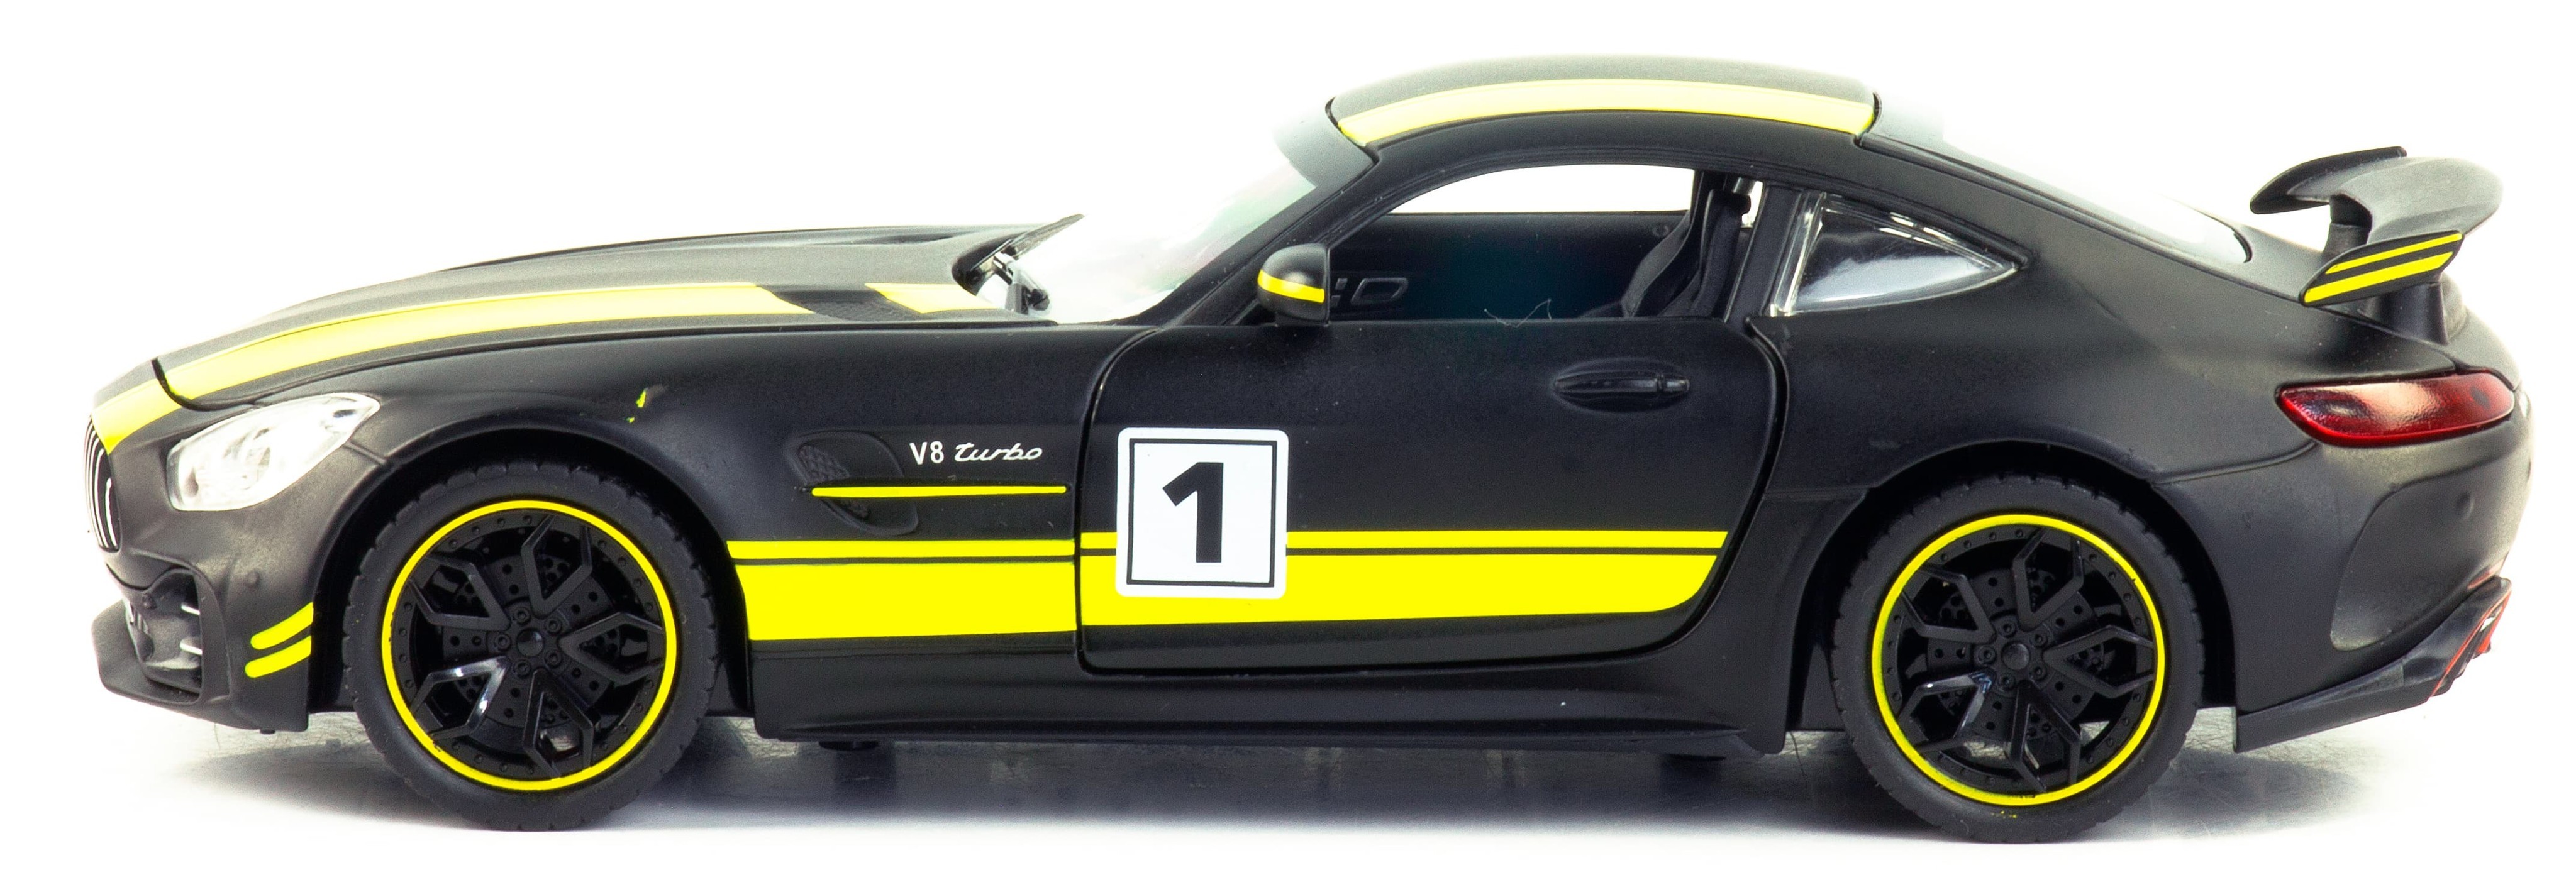 Металлическая машинка Che Zhi 1:24 «Mercedes AMG GT» CZ30A, 20.5 см. инерционная, свет, звук / Черный